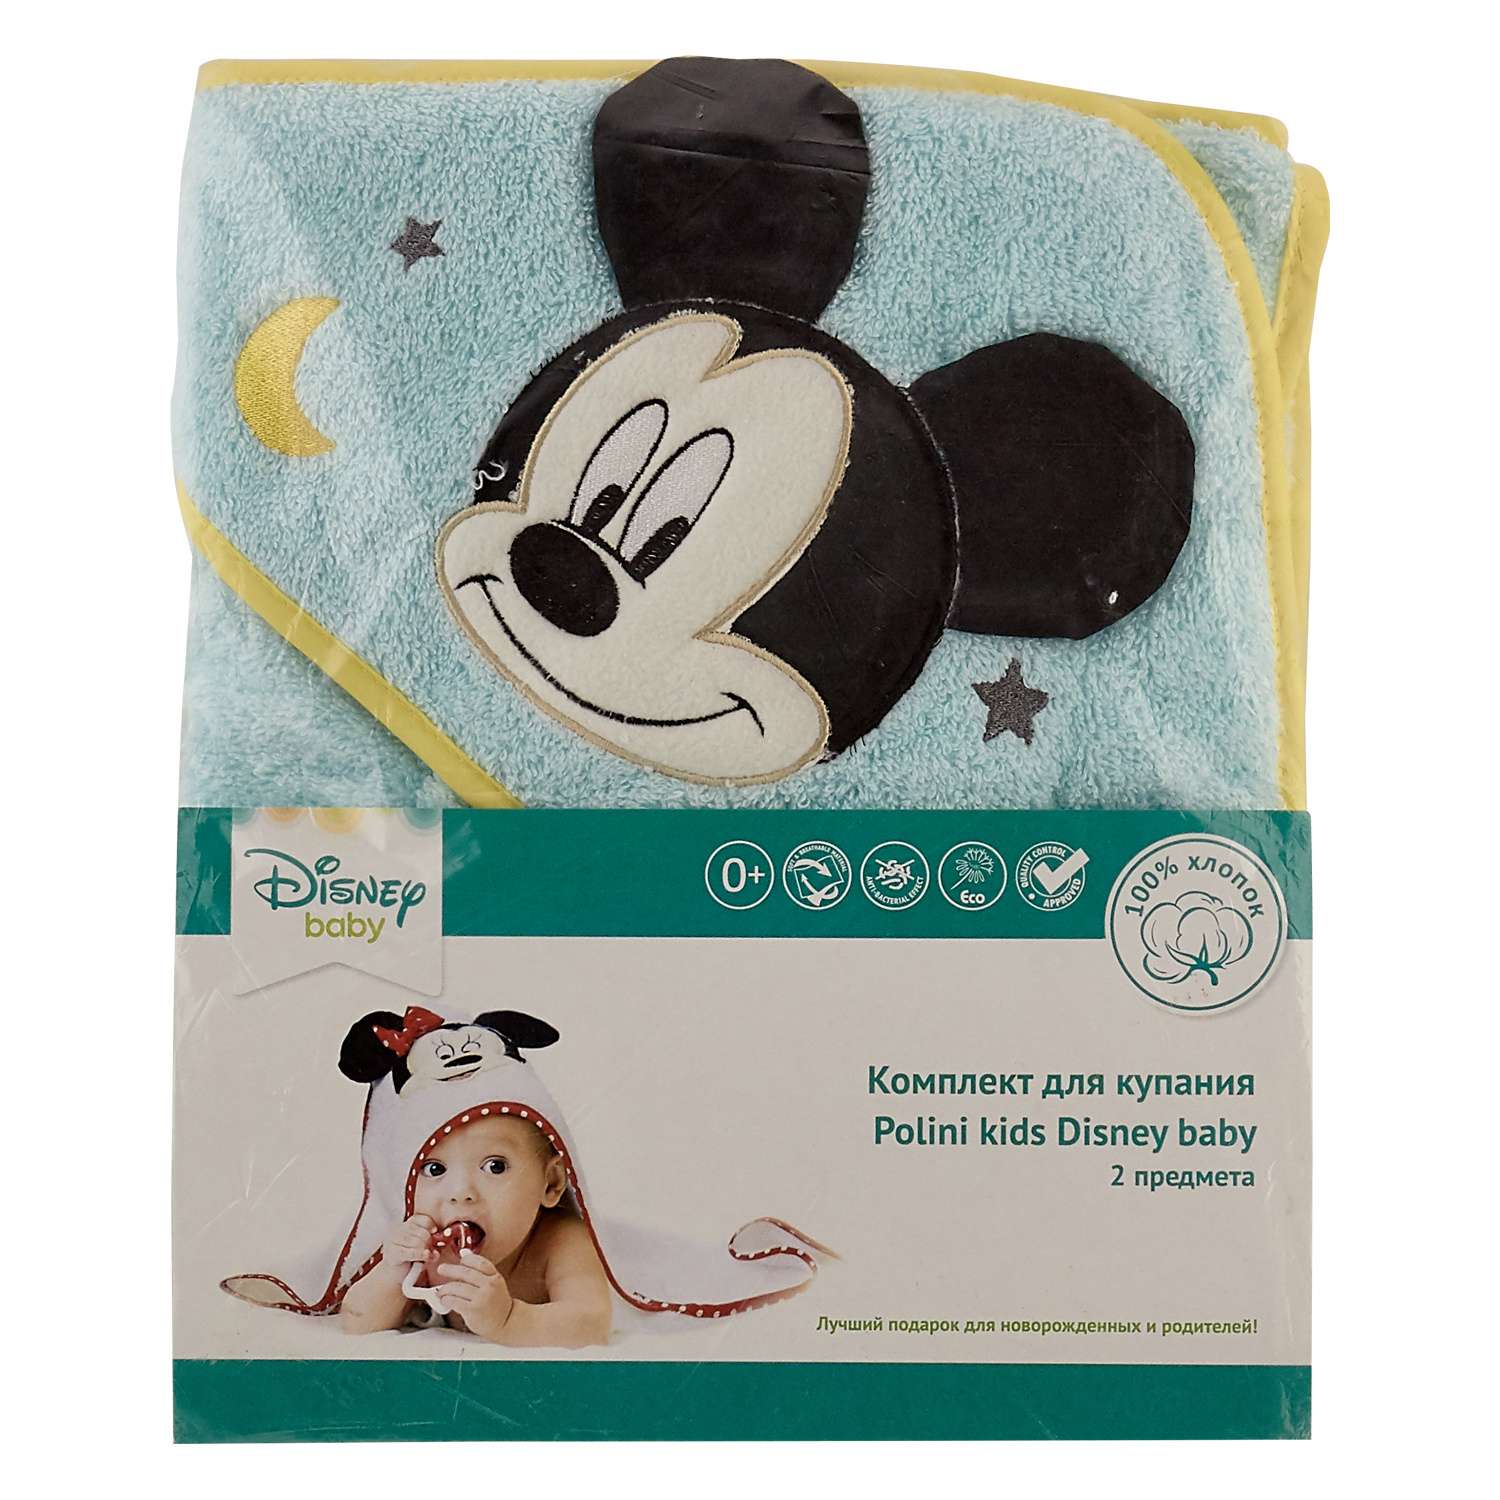 Комплект для купания Polini kids Disney baby Микки Маус 2предмета Бирюзовый - фото 2